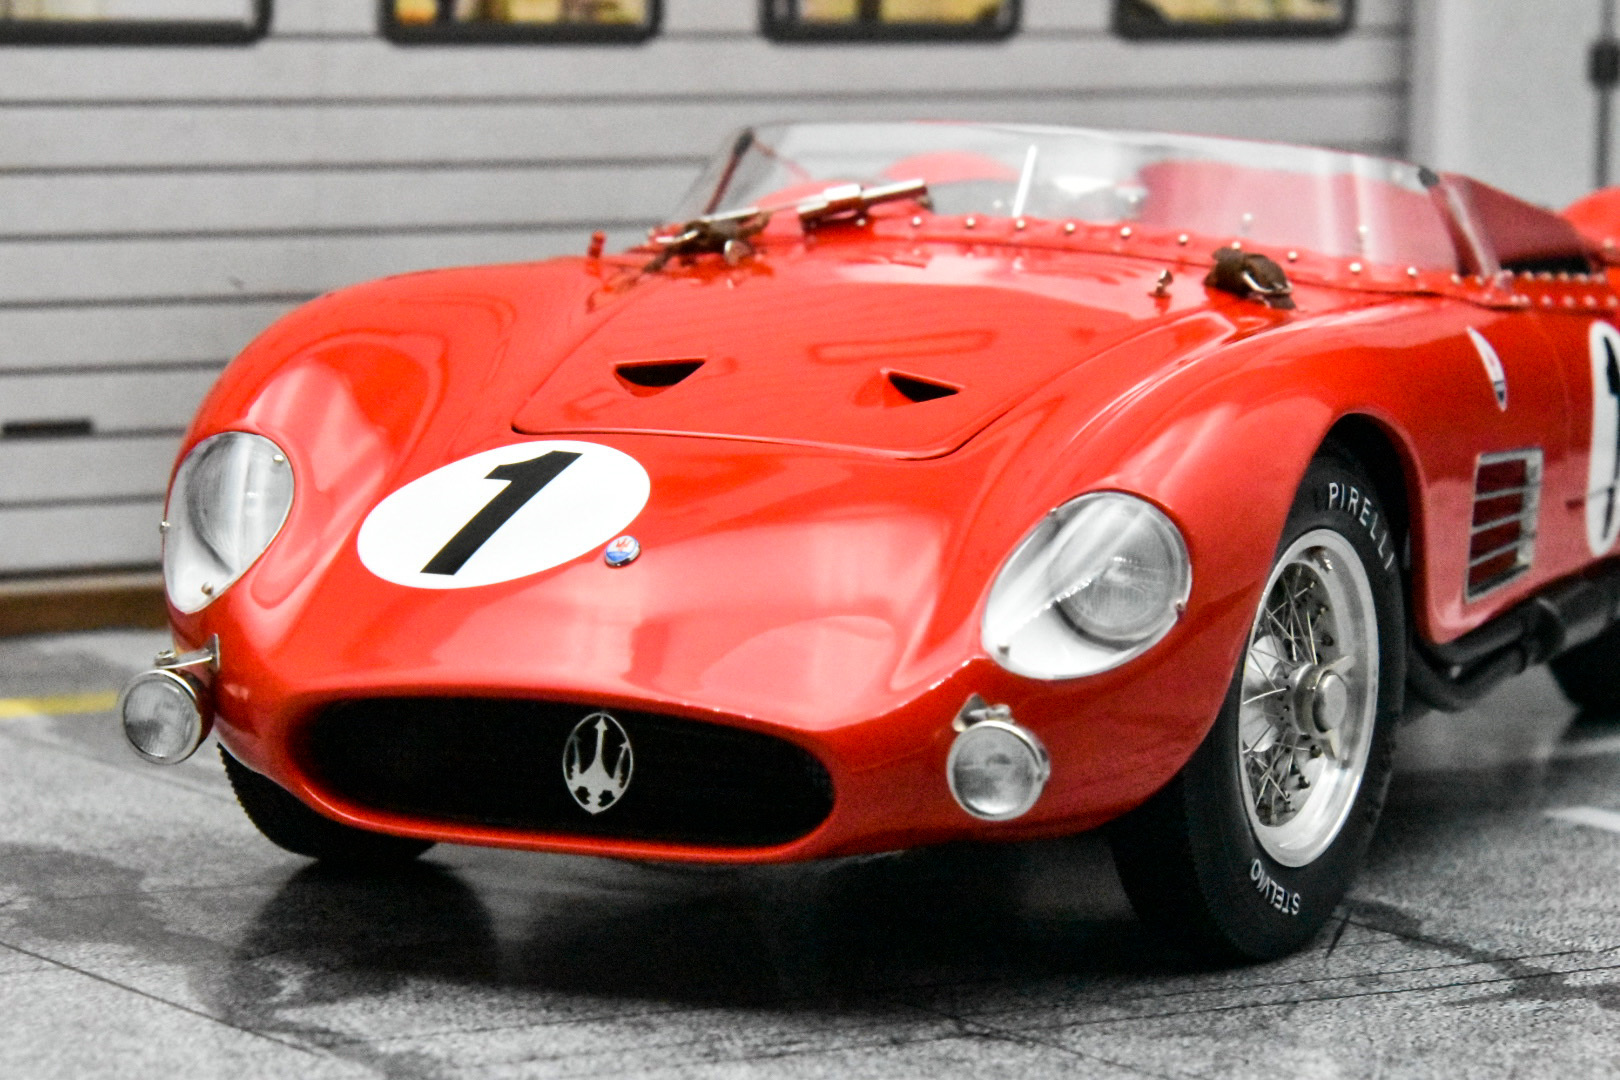 総合評価CMC 1/18 Maserati 300S 1958 Le Mans No.1 (M-108) レーシングカー